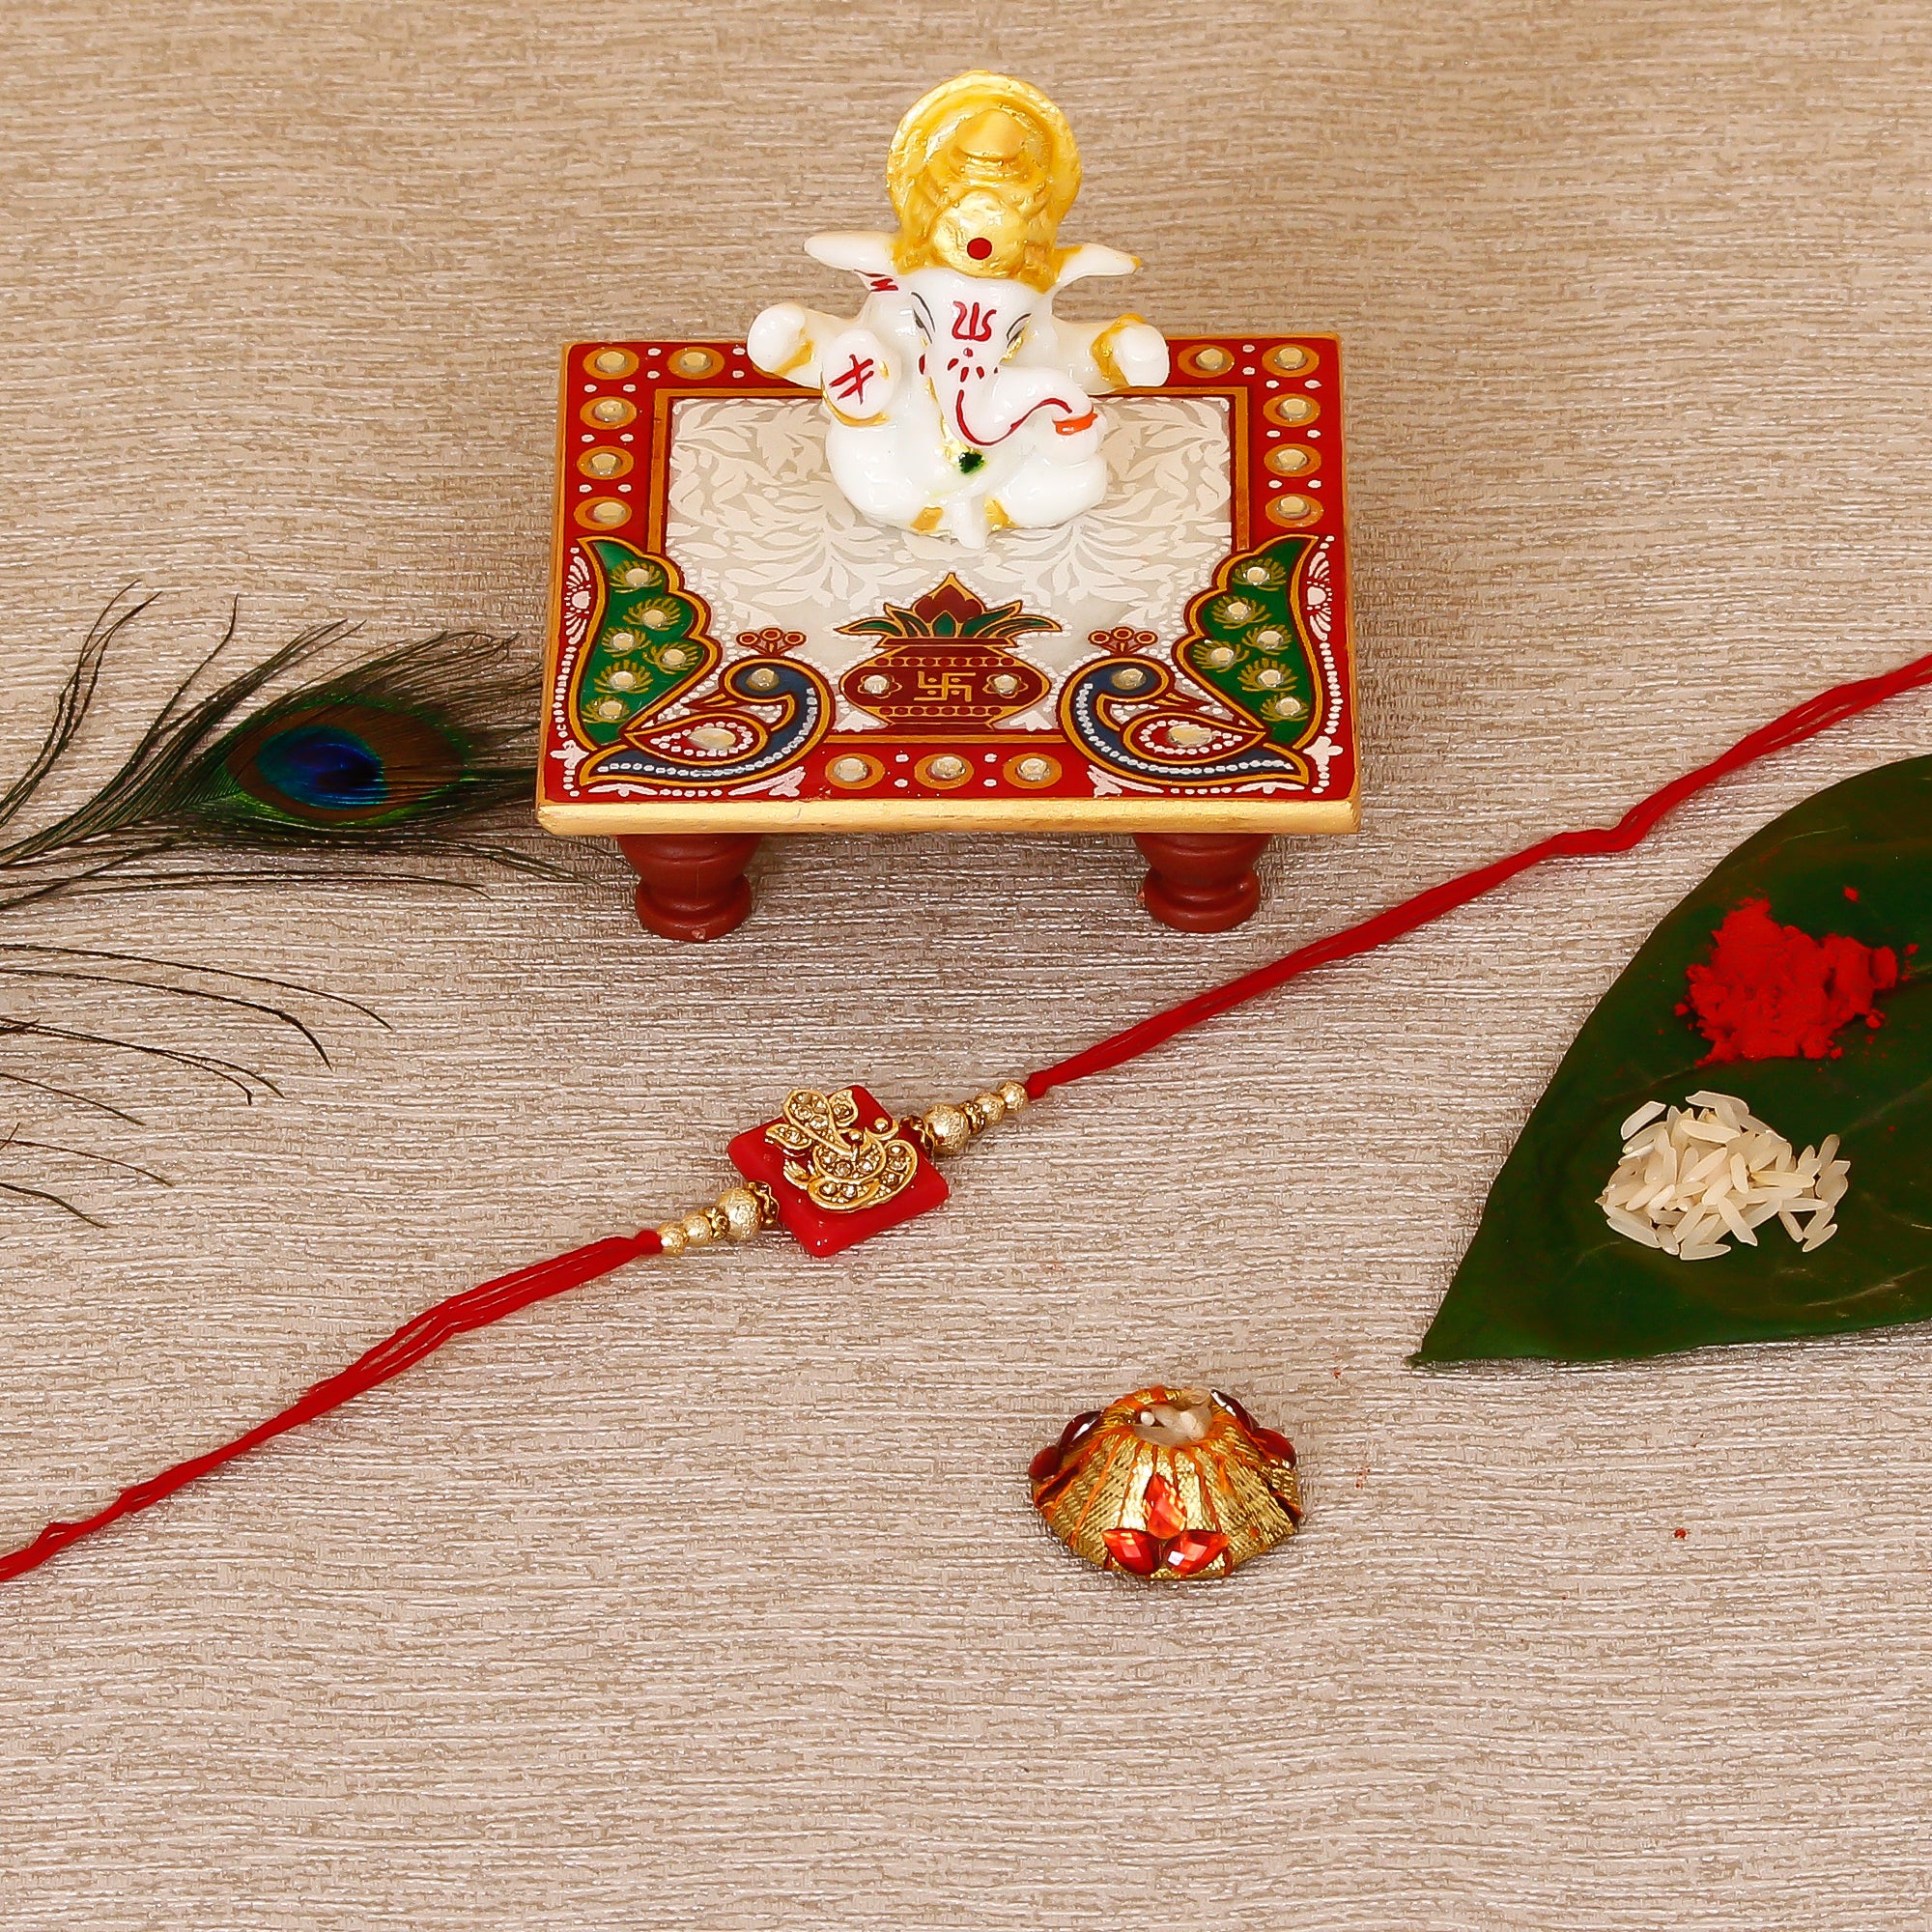 Designer Religious Ganesha Rakhi with Lord Ganesha Marble Chowki and Roli Tikka Matki